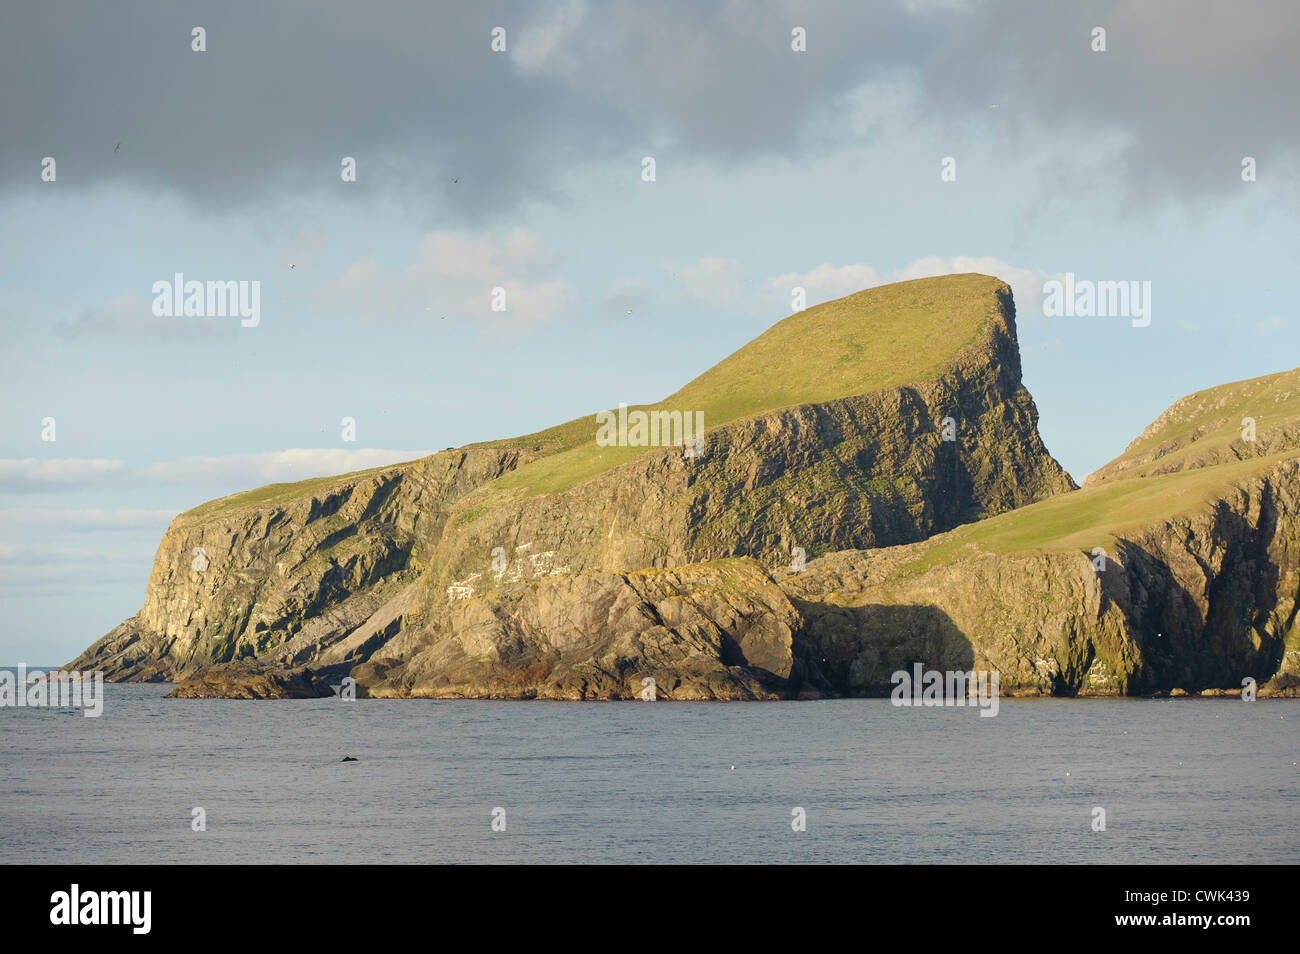 Pecore Craig o pecore Rock sul Fair nelle isole Shetland. Giugno 2012. Foto Stock